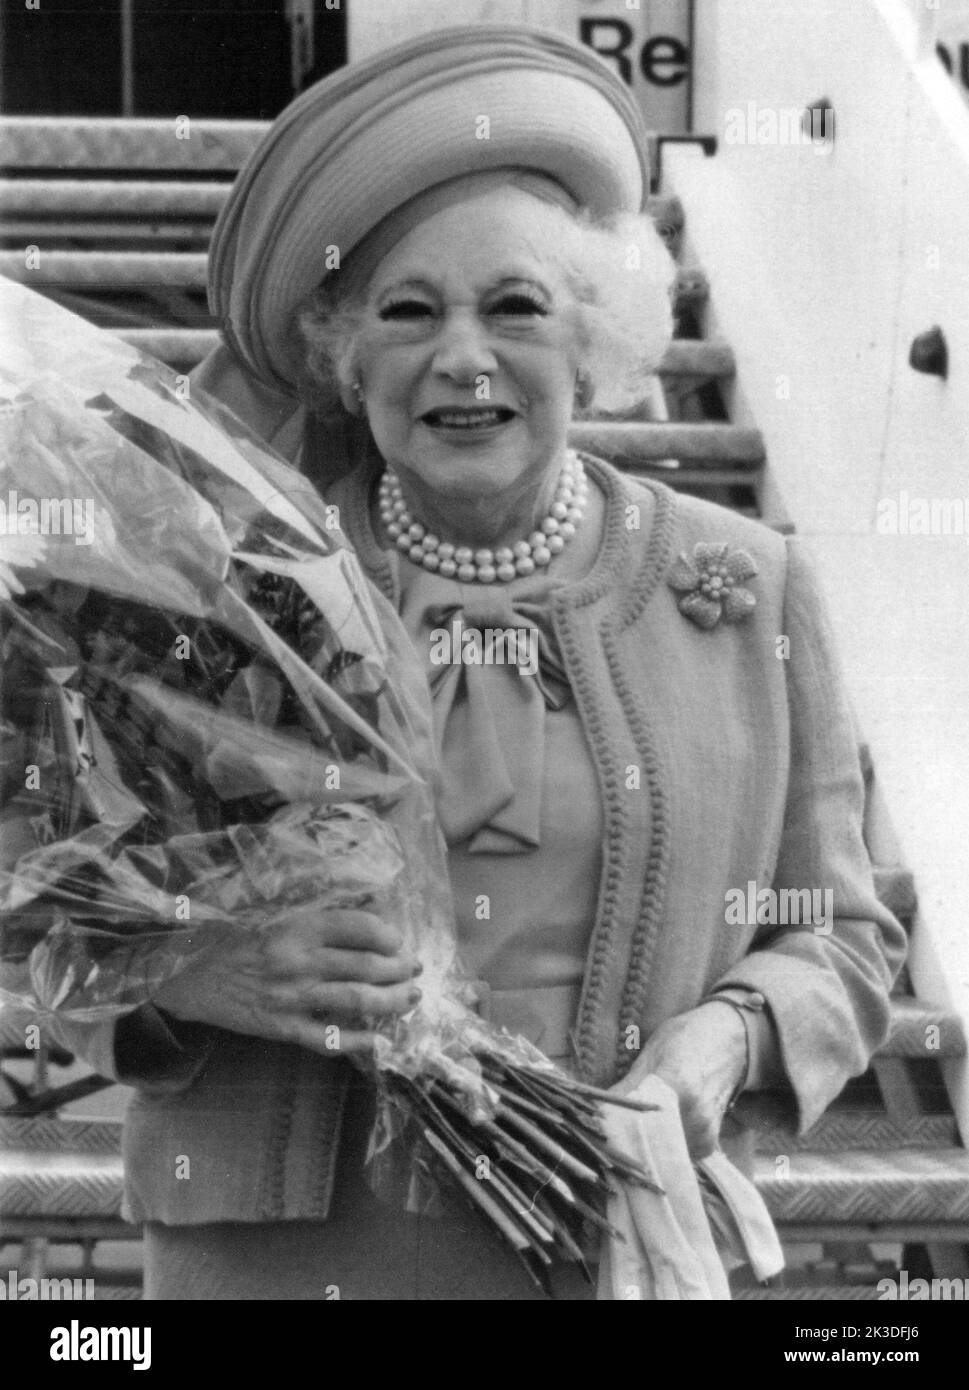 Englische Autorin Dame Mary Barbara Hamilton Cartland bei der ANkunft am Flughafen mit einem Blumenstrauß, Ende 1980er Jahre - Fotobuch Band 1 von 2012: PROmi- Porträts fotografiert von Hartwig 'Valdi' Valdmanis Foto Stock